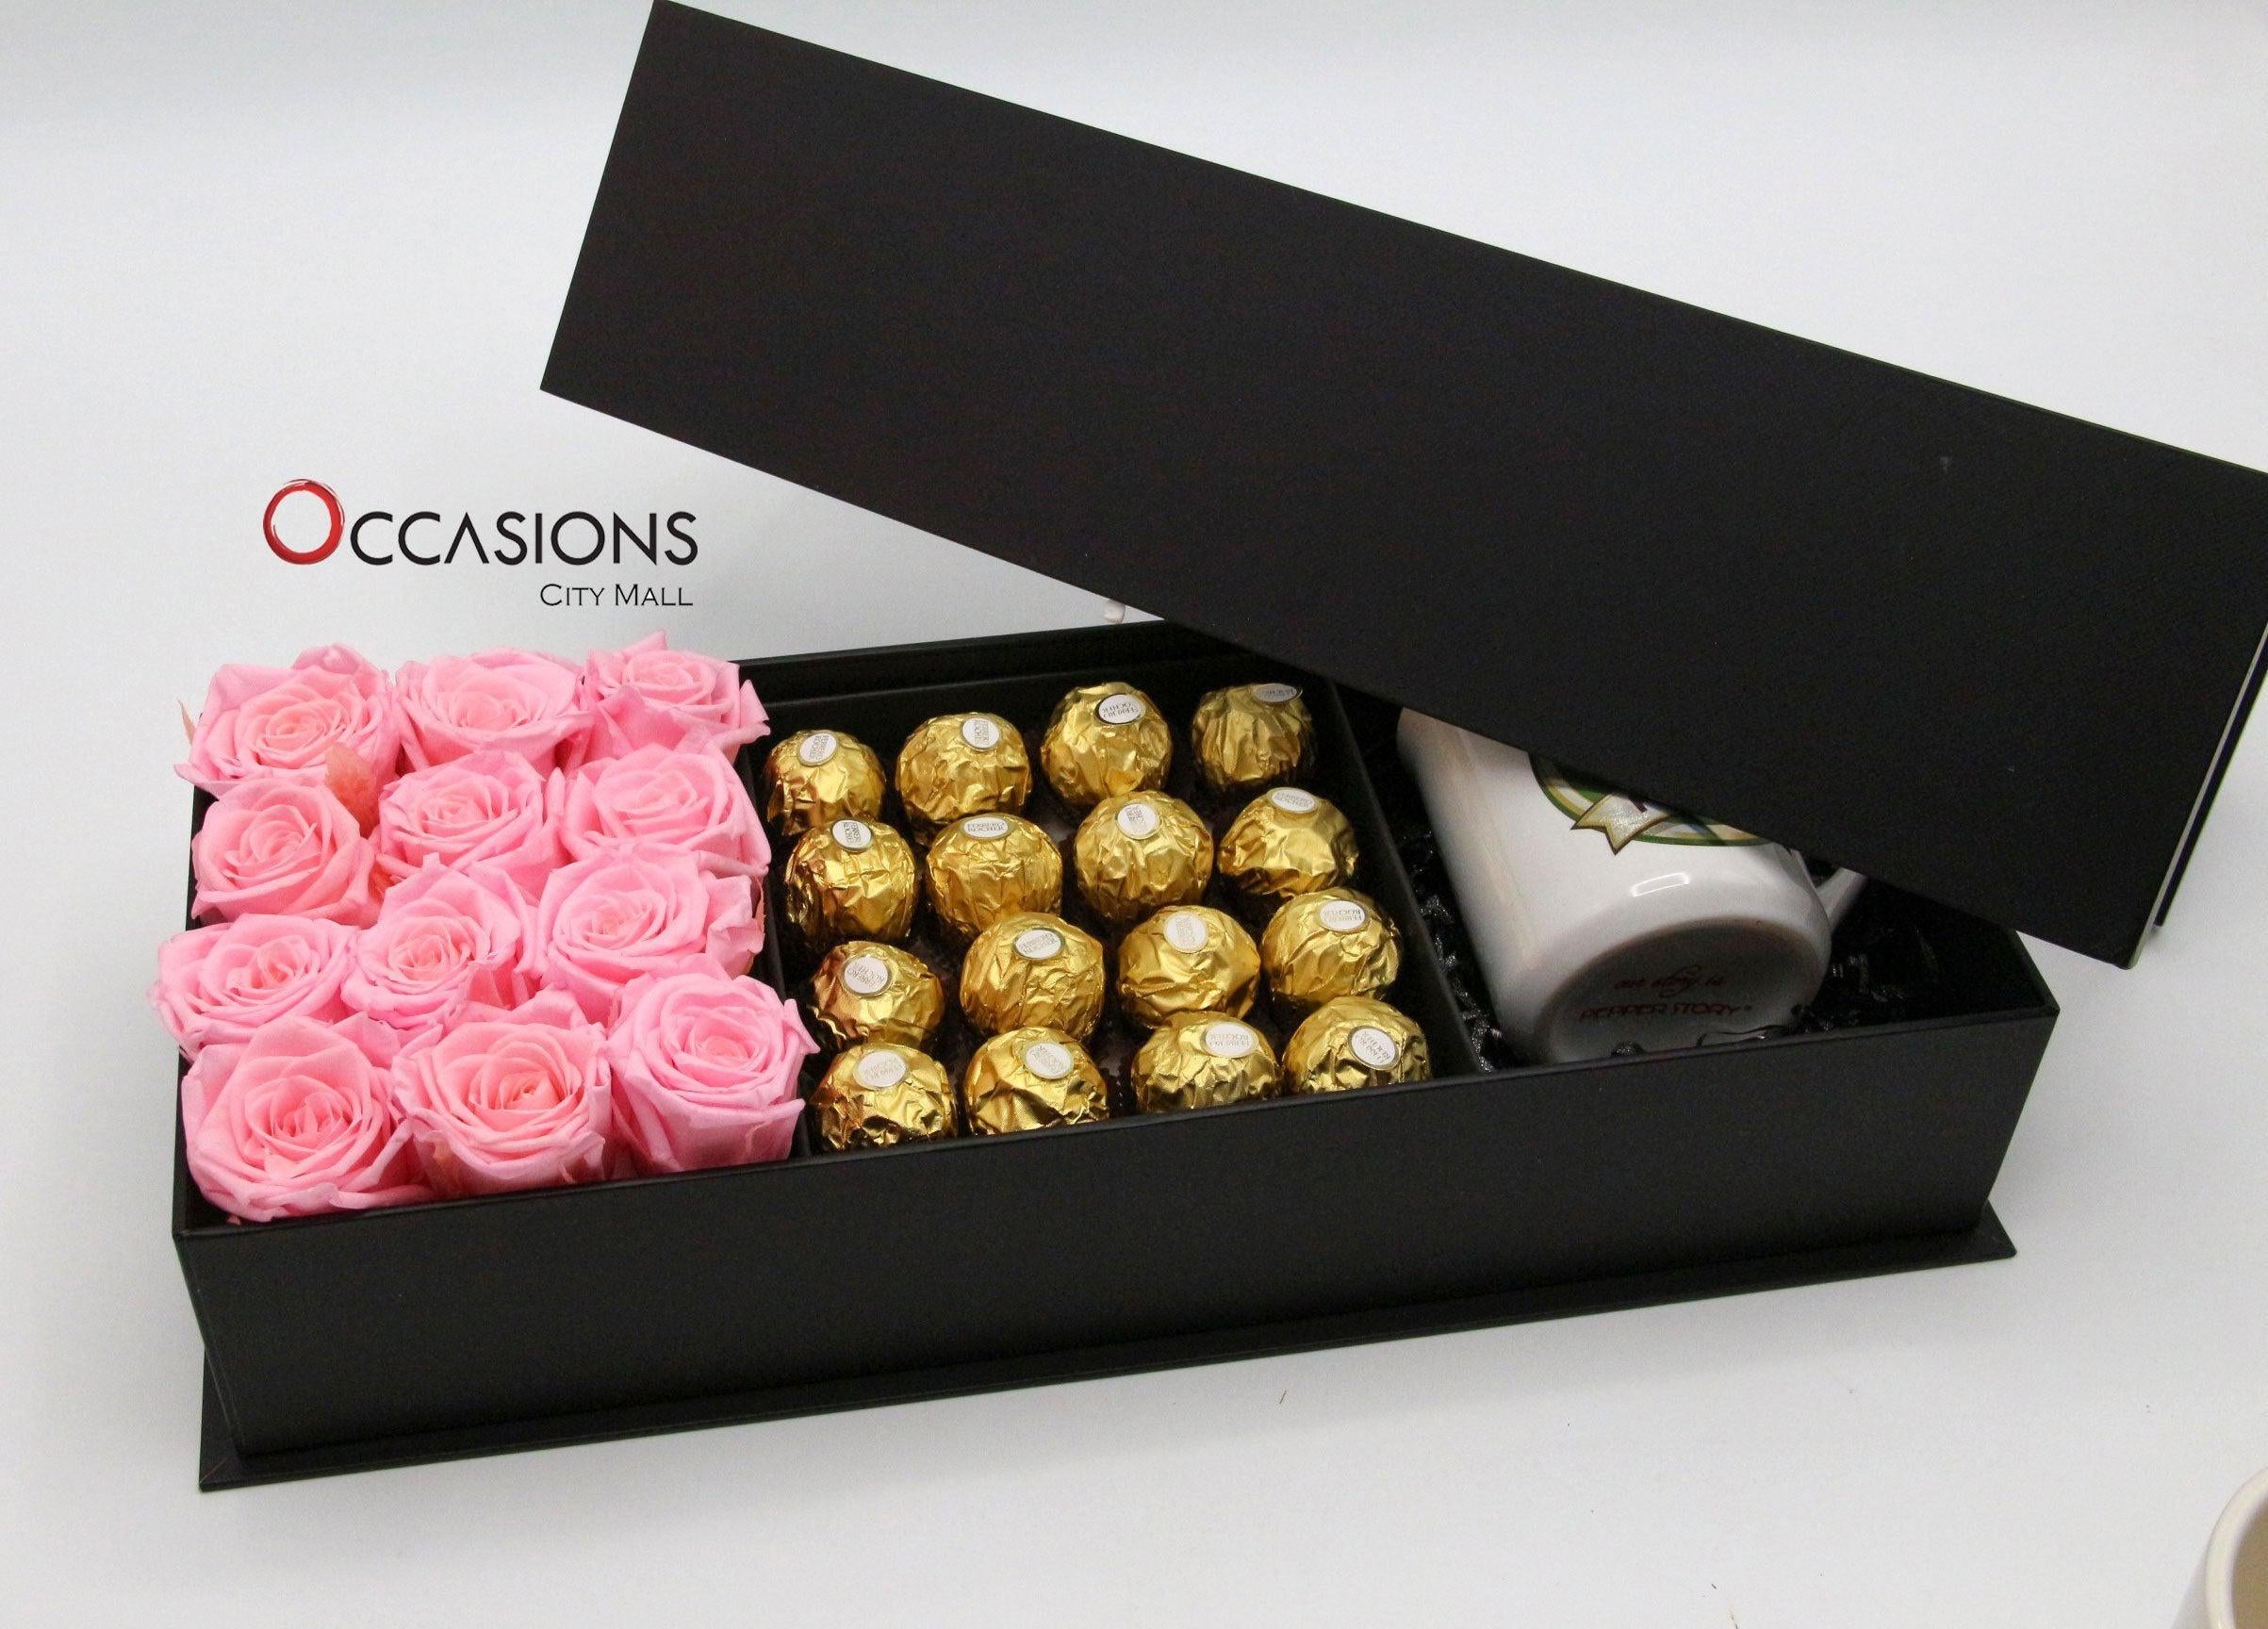 Best Friend Special Pink Package Flowerssend_delivery_Amman_Jordan